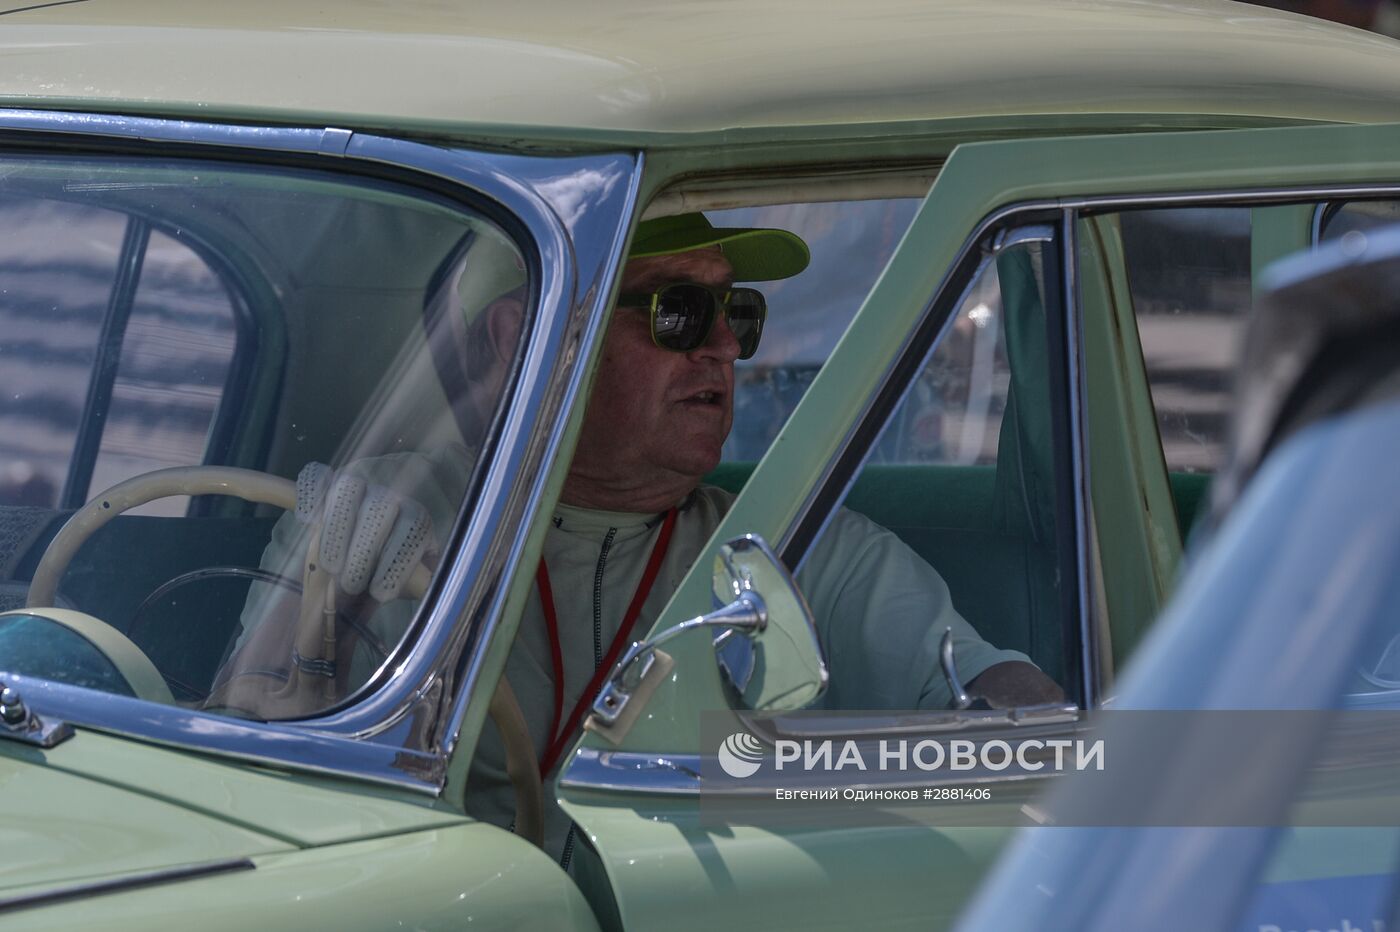 Гонка старинных автомобилей Bosch Moskau Klassik